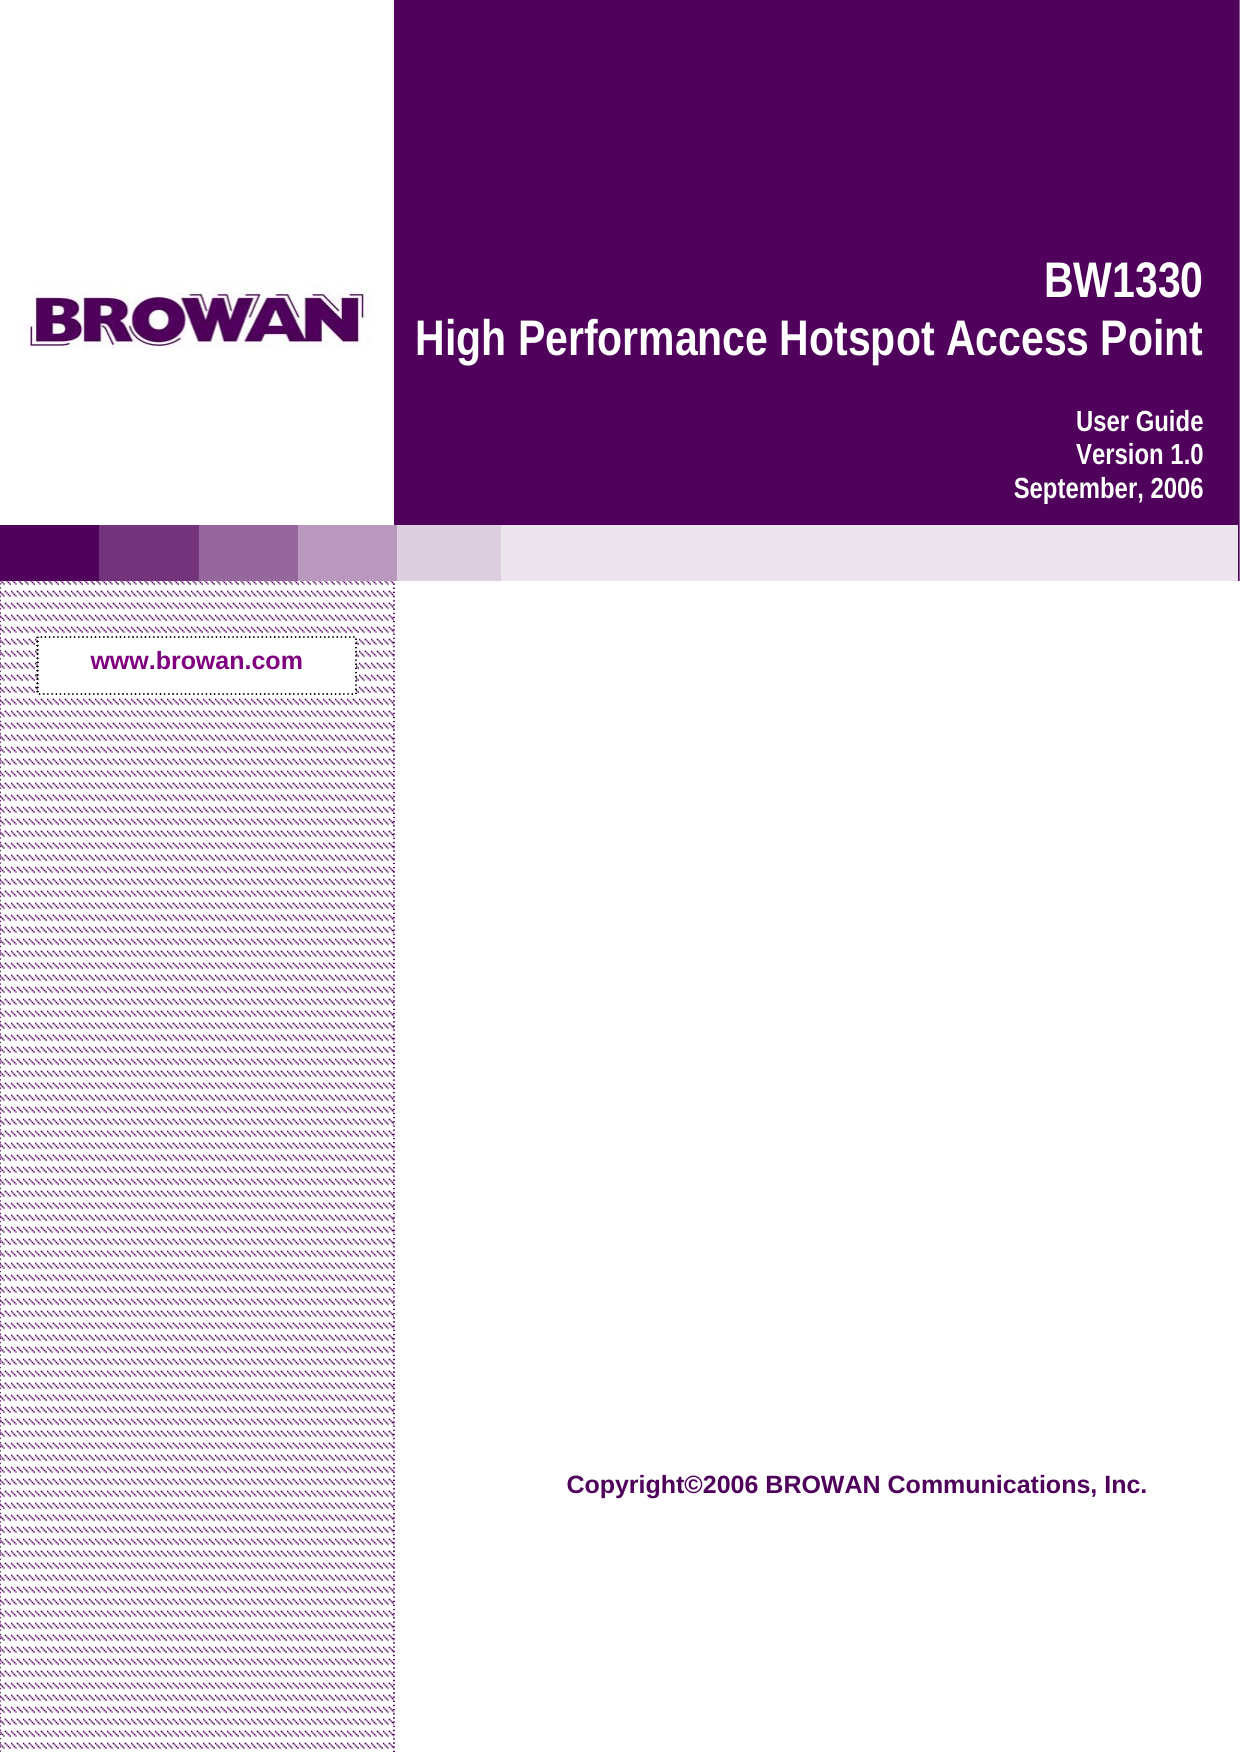           BW1330  High Performance Hotspot Access Point User Guide Version 1.0 September, 2006www.browan.com Copyright©2006 BROWAN Communications, Inc.